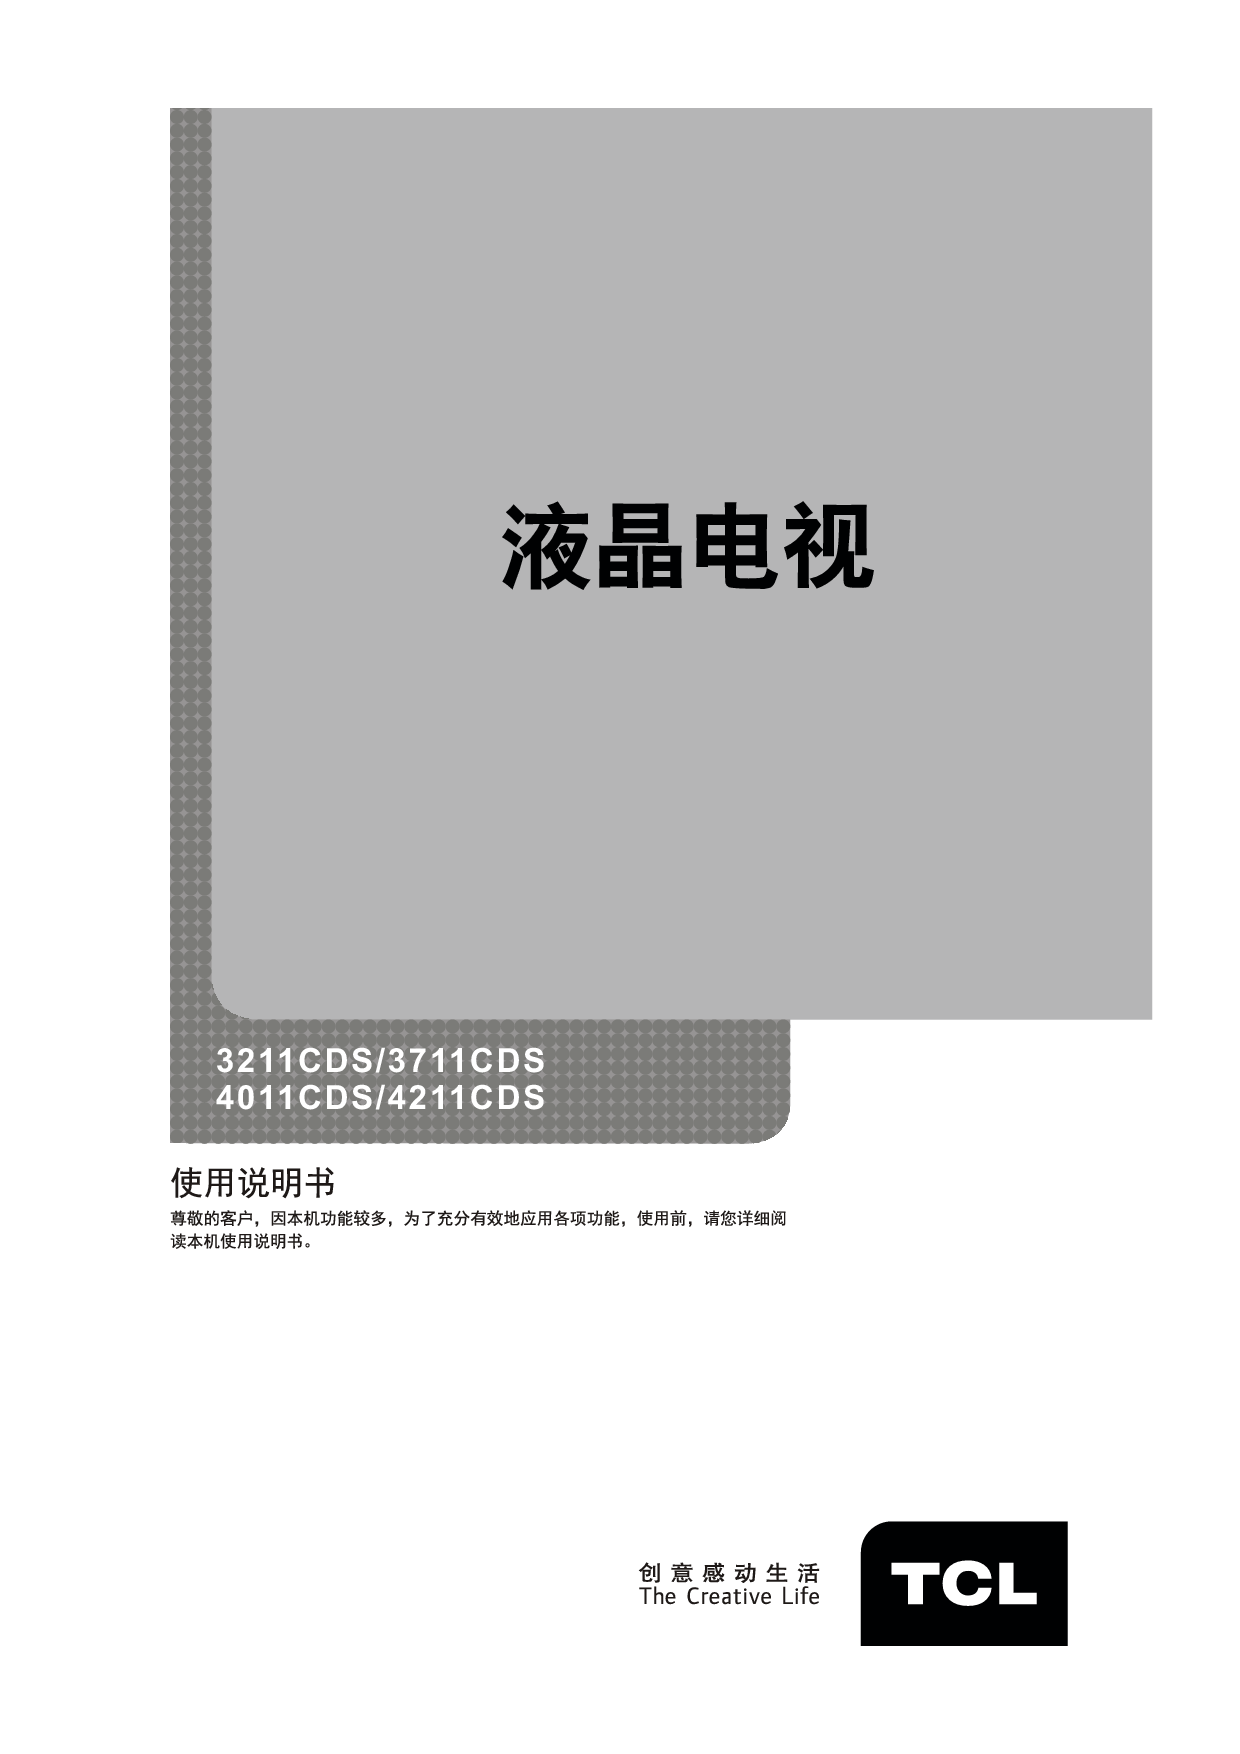 TCL 3211CDS 使用说明书 封面